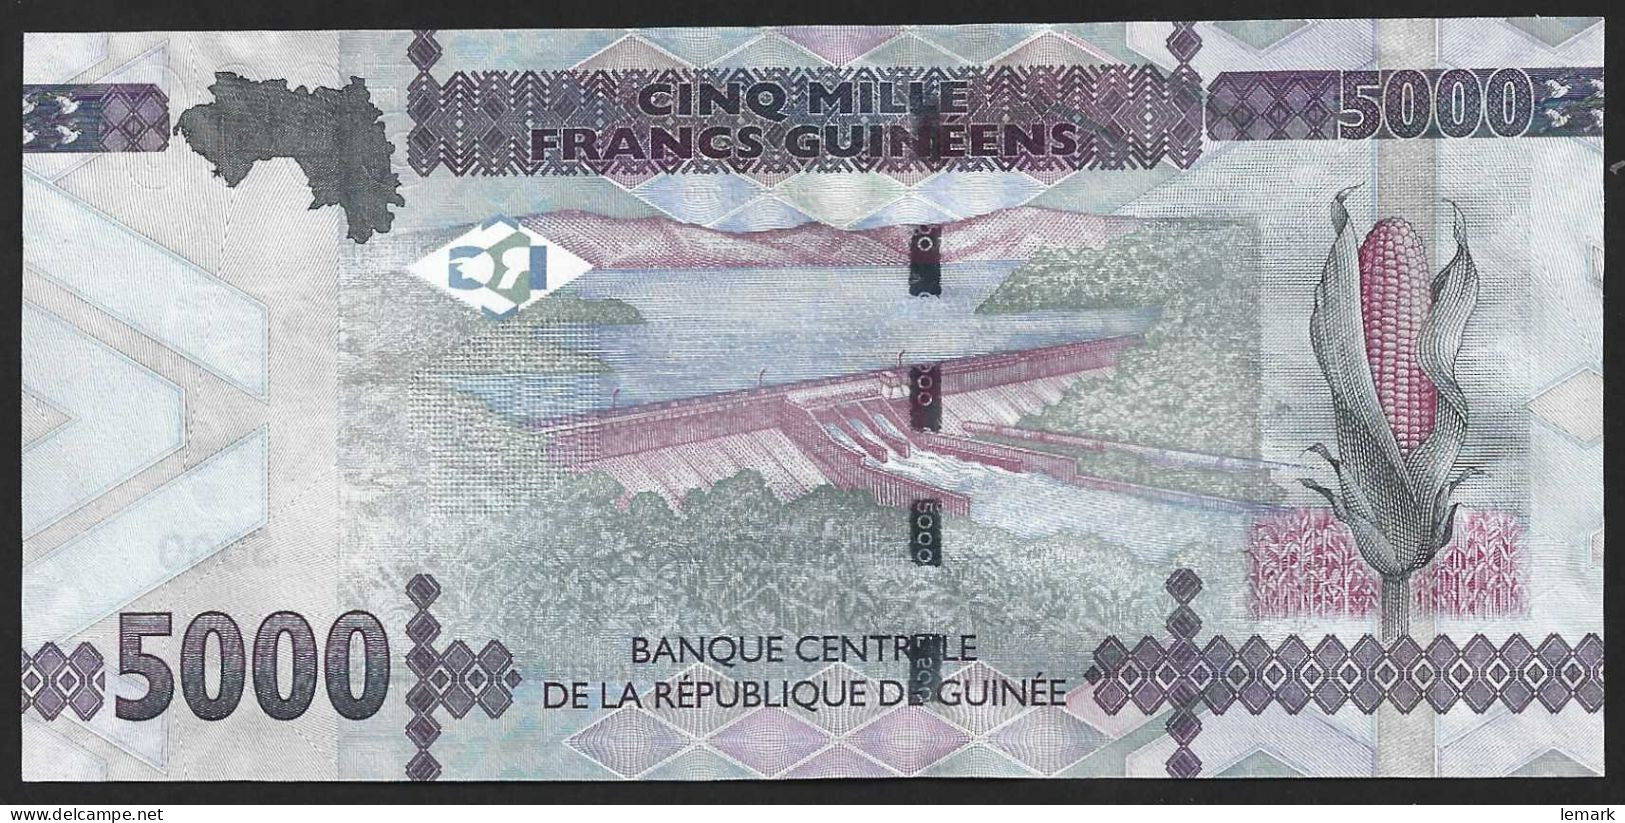 Guinea 1000 Francs 2018  P48c  UNC - Guinea